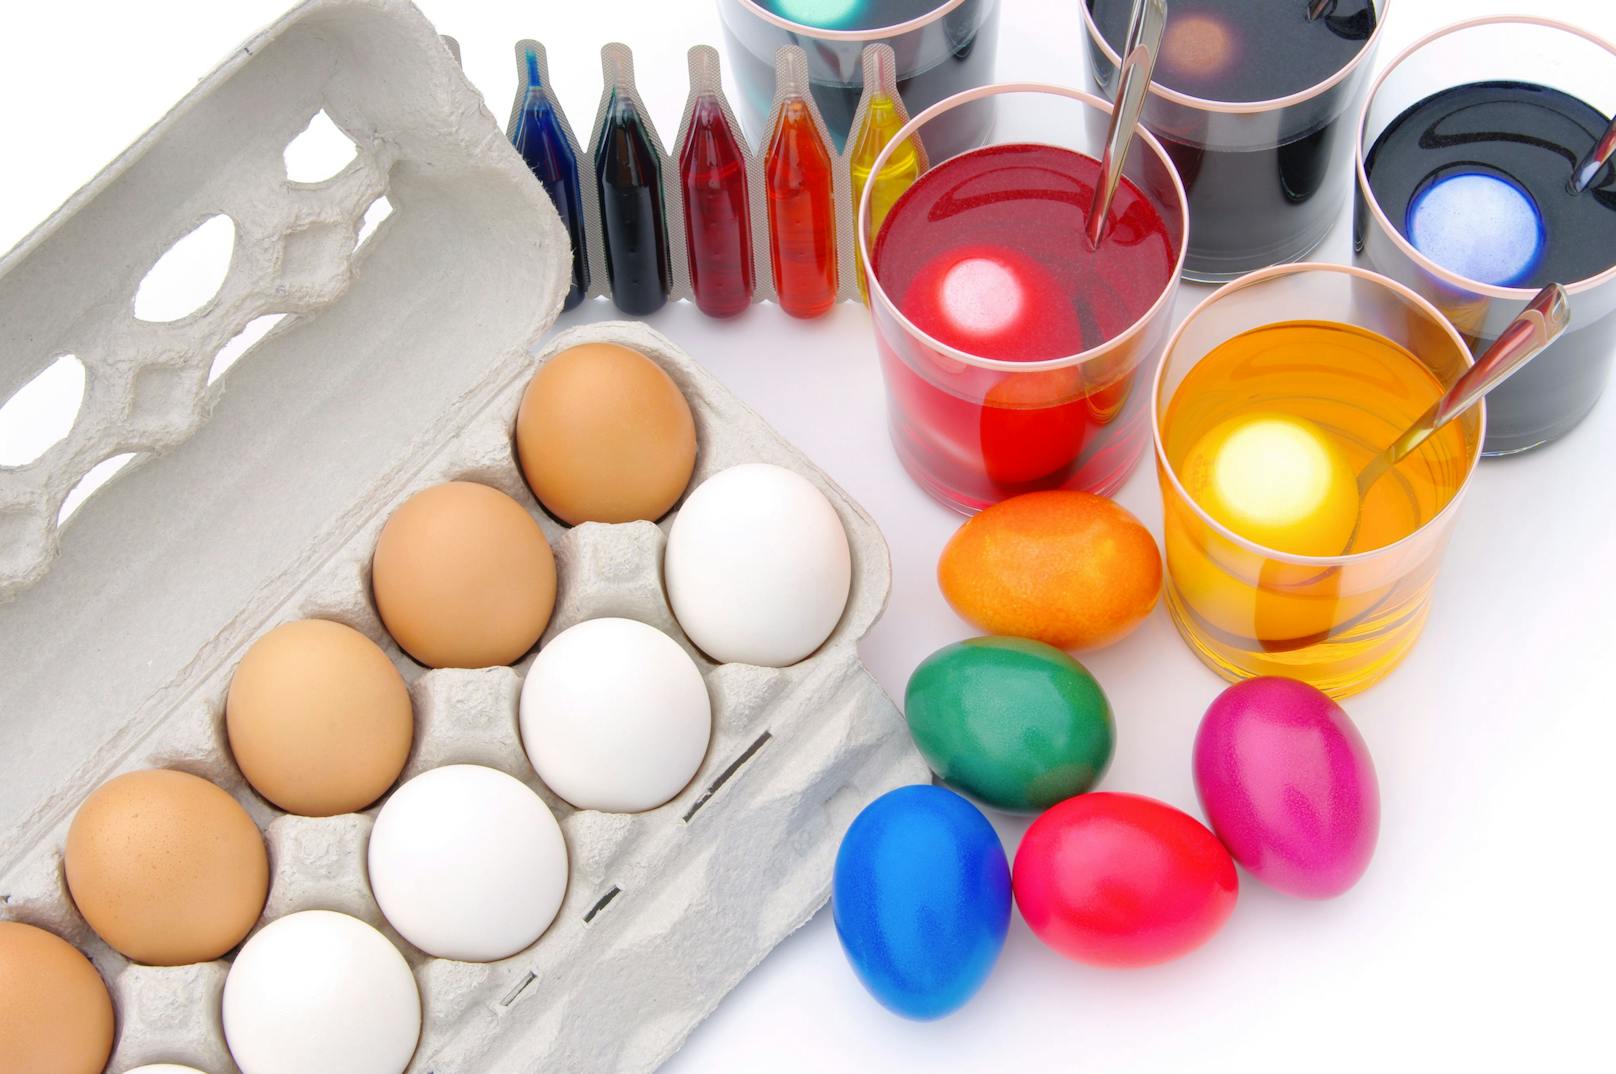 <strong>Tipp 2:</strong> Außerdem eignen sich weiße Eier besser als braune, weil die Farben schöner werden.